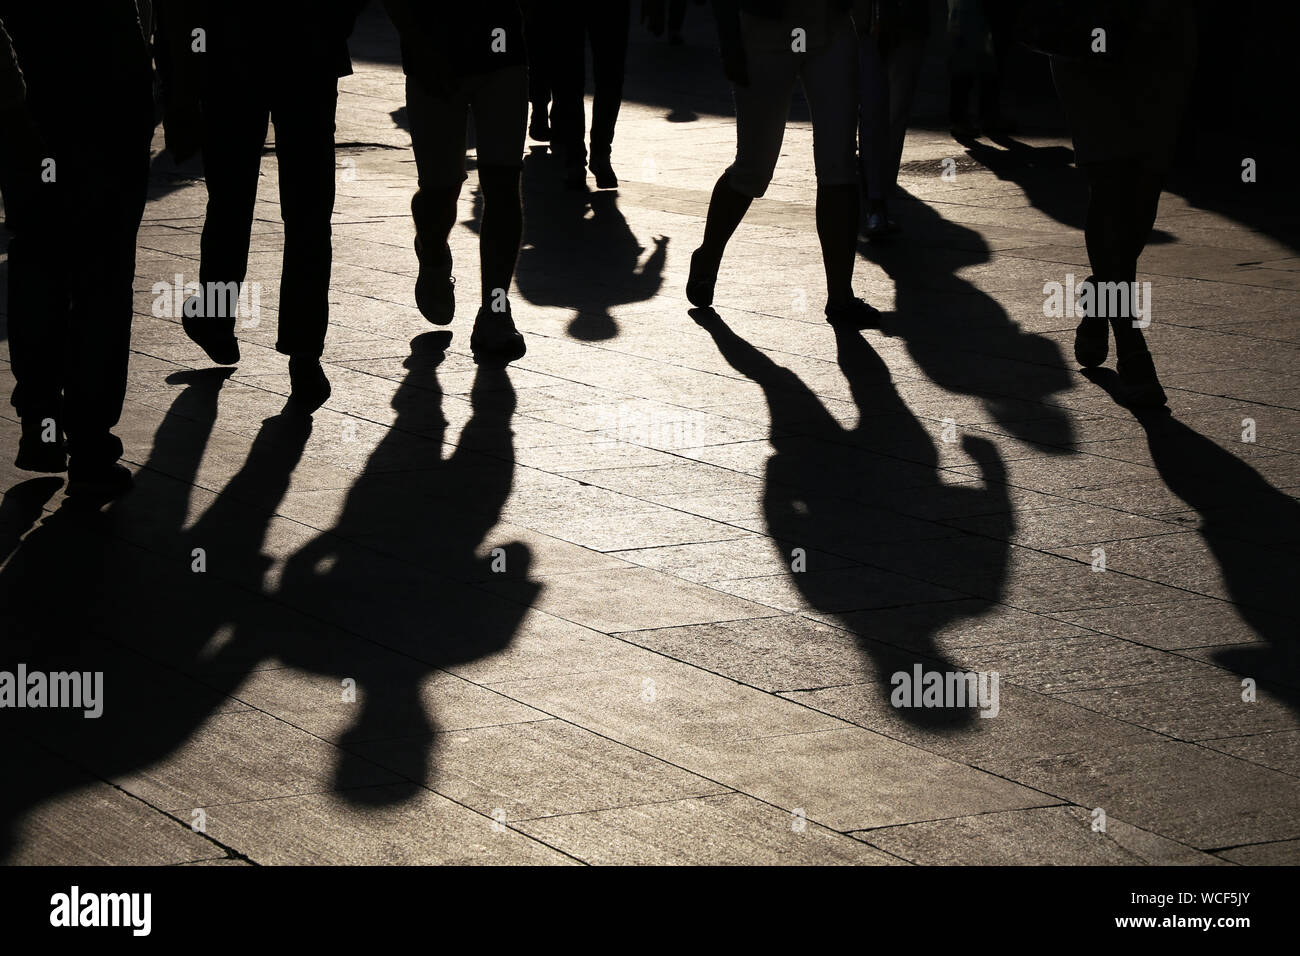 Silhouettes noires et des ombres de personnes dans la rue. Foule marchant sur le trottoir, concept de piétons, de la criminalité, de la société, de la vie en ville Banque D'Images